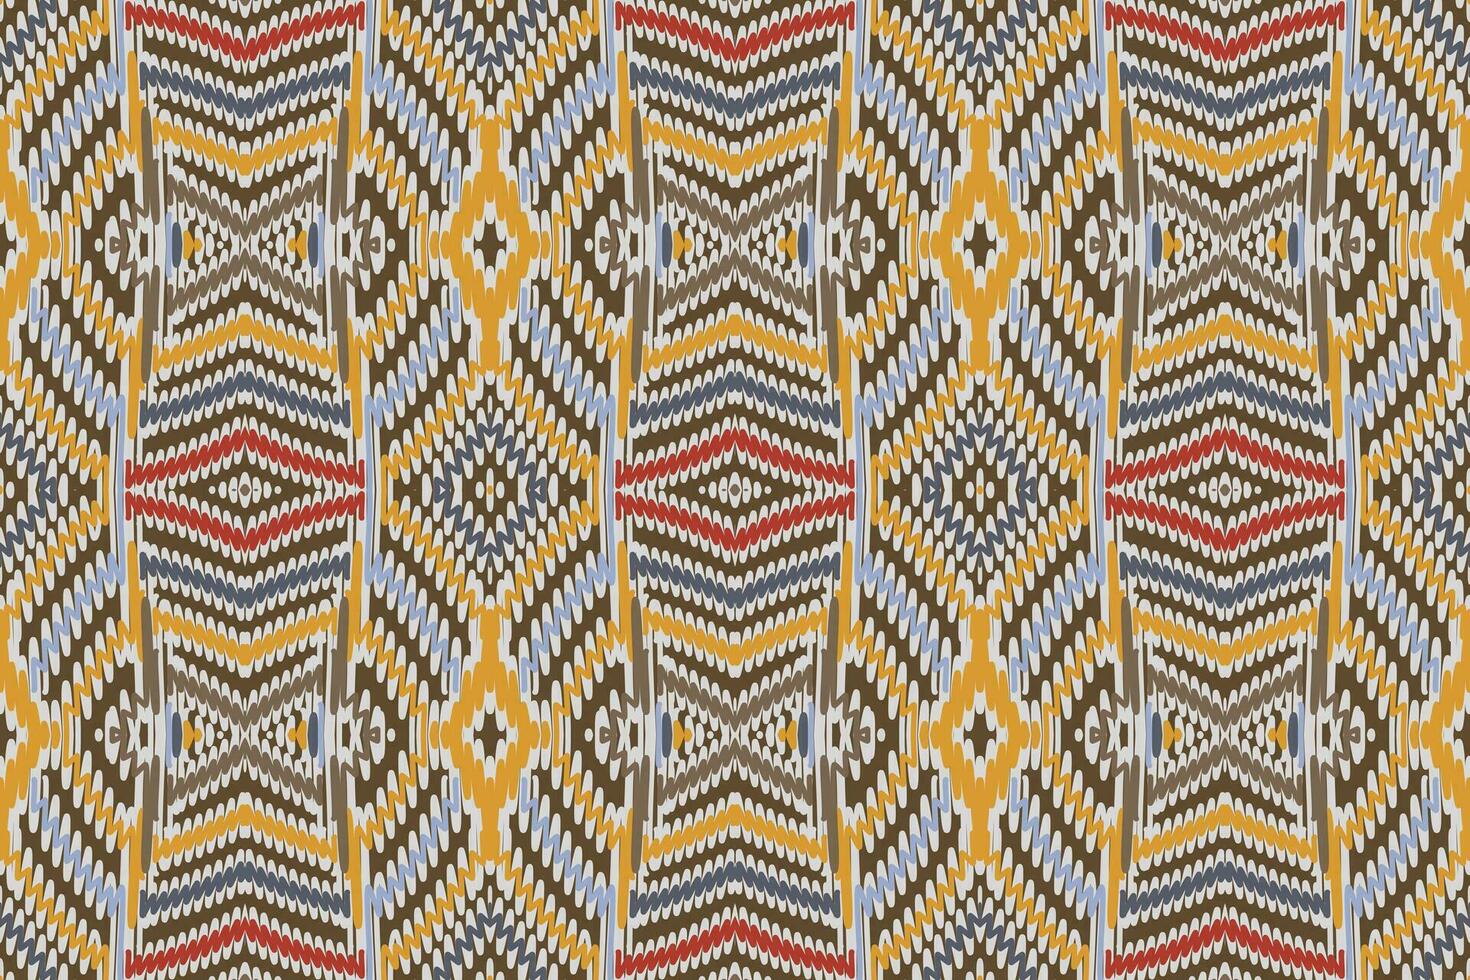 nordic patroon naadloos Australisch aboriginal patroon motief borduurwerk, ikat borduurwerk vector ontwerp voor afdrukken sjaal hijab patroon hoofddoek ikat vector zijde kurti model- mughal patronen